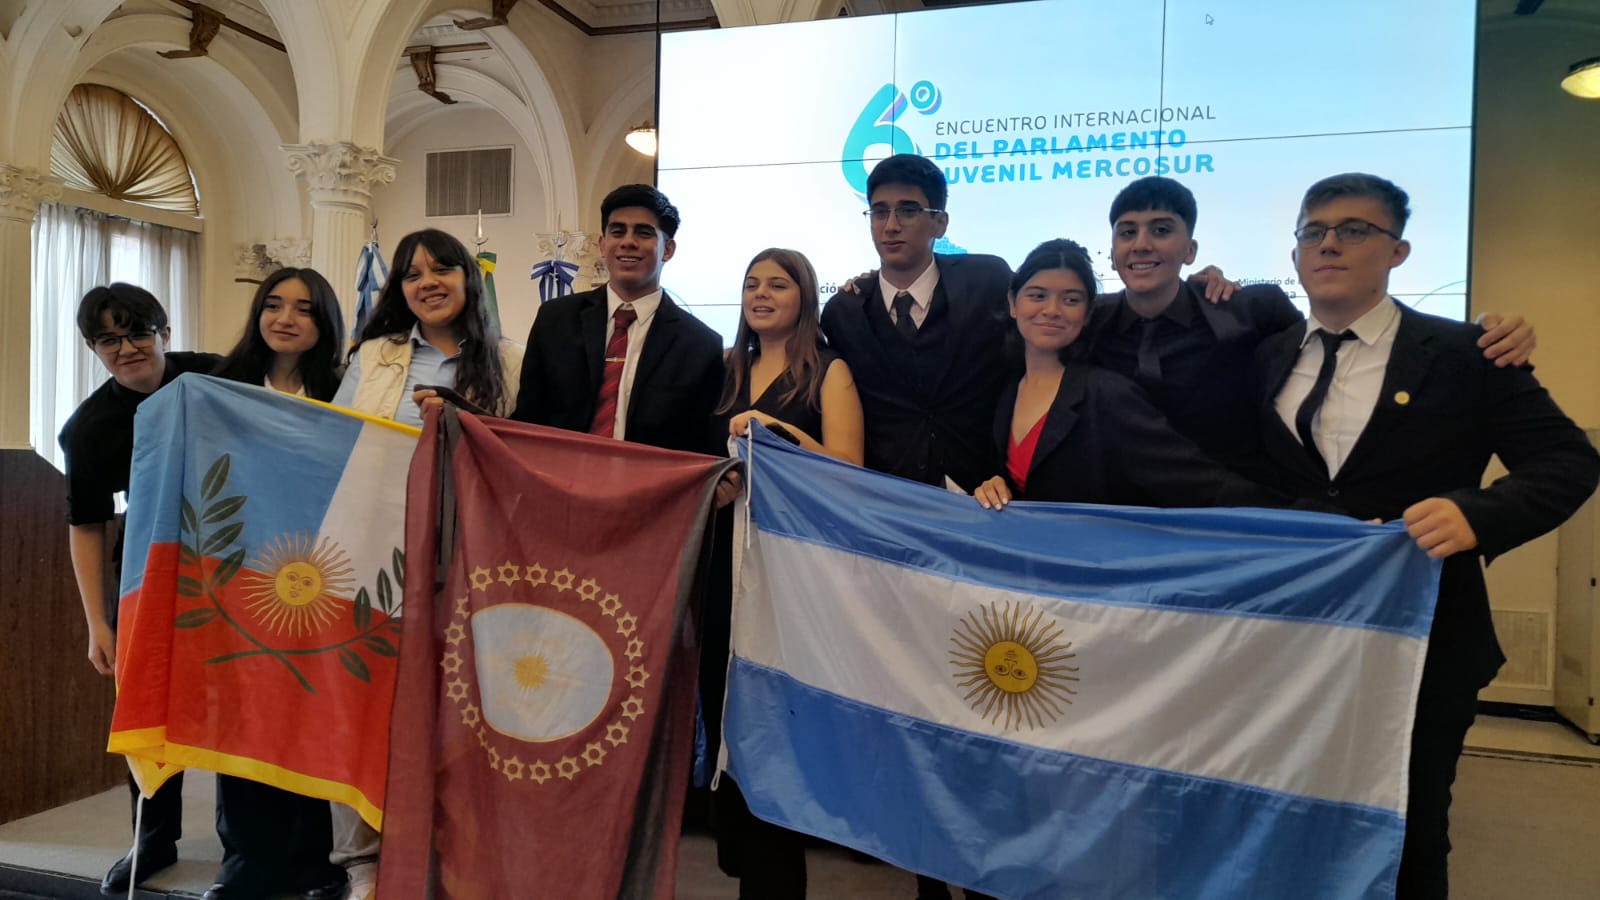 Catamarca presente en el 6 Encuentro Internacional del Parlamento Juvenil del Mercosur1